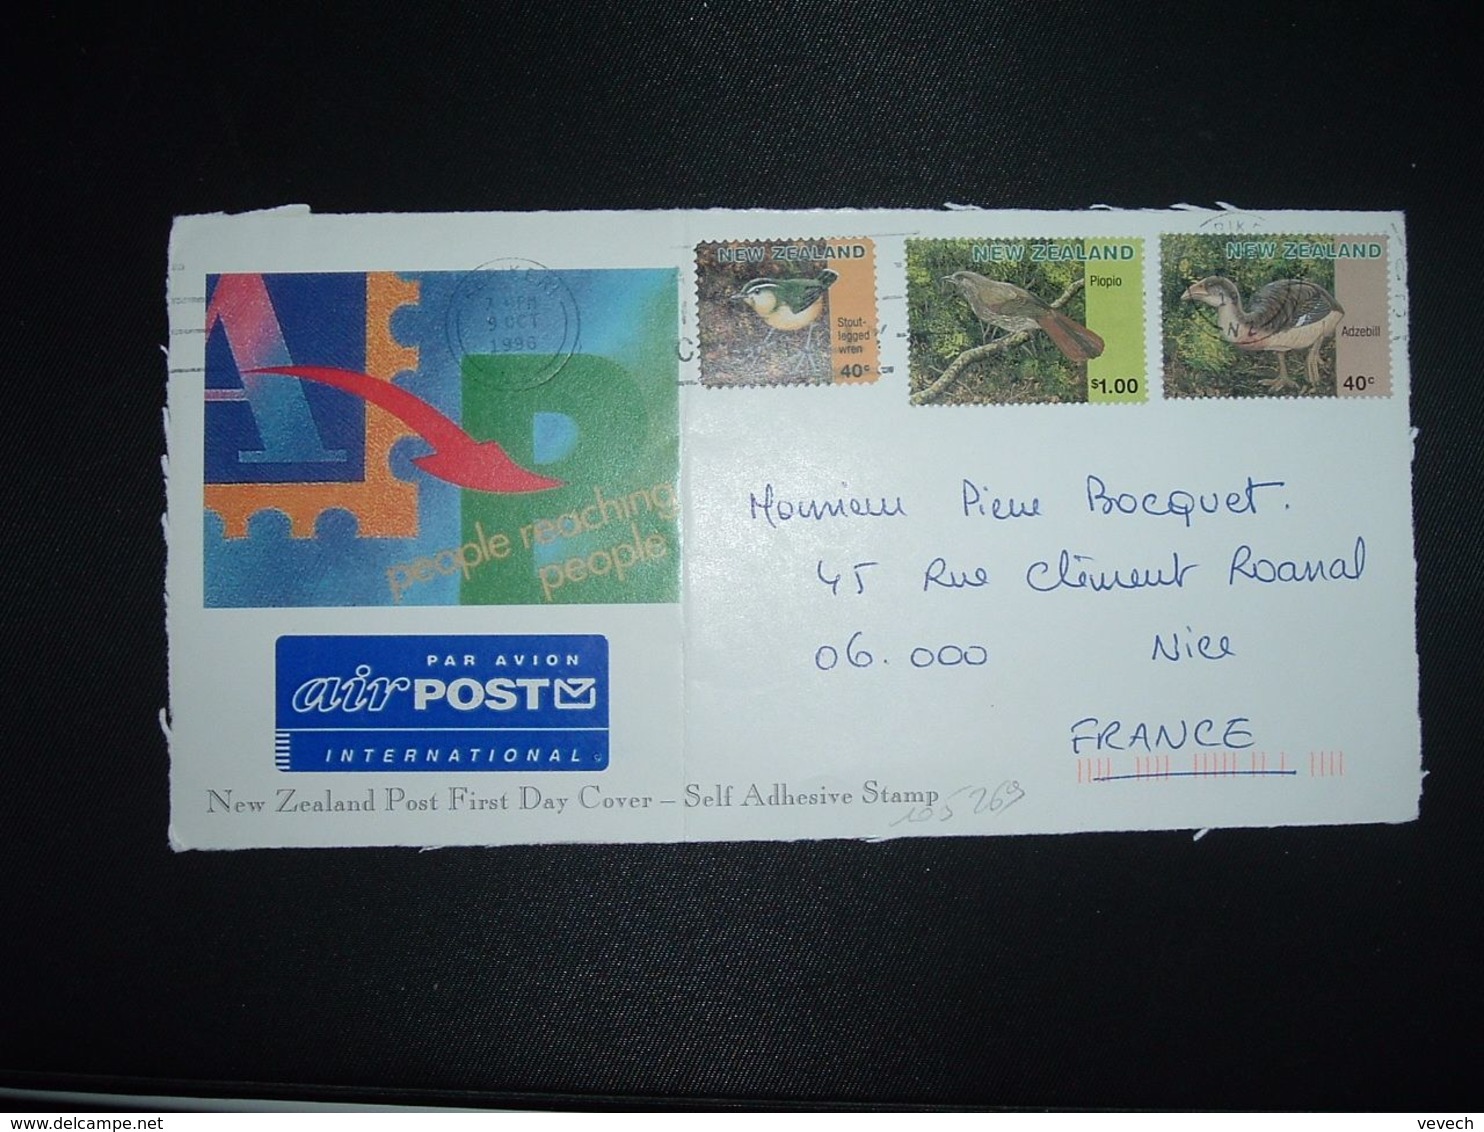 DEVANT Pour La FRANCE TP OISEAU ADZEBILL 40c + PIOPIO S 1.00 + STOUT-LEGGED VREN 40c OBL.MEC.9 OCT 1996 KERIXERN - Cartas & Documentos